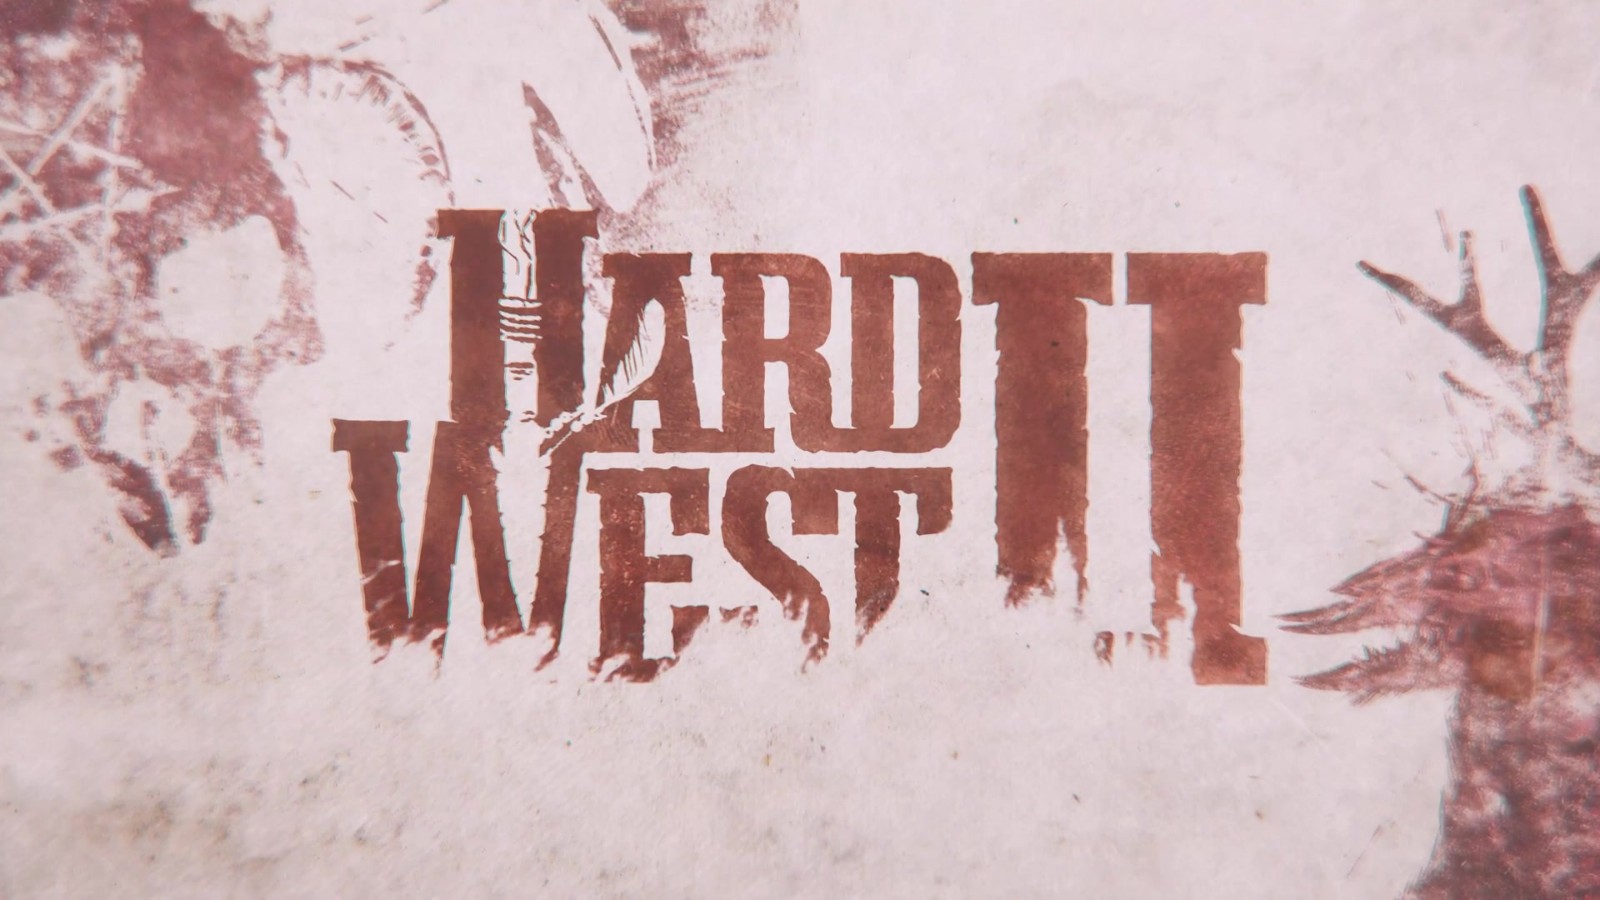 回合制策略新作《血战西部2》将于8月5日推出